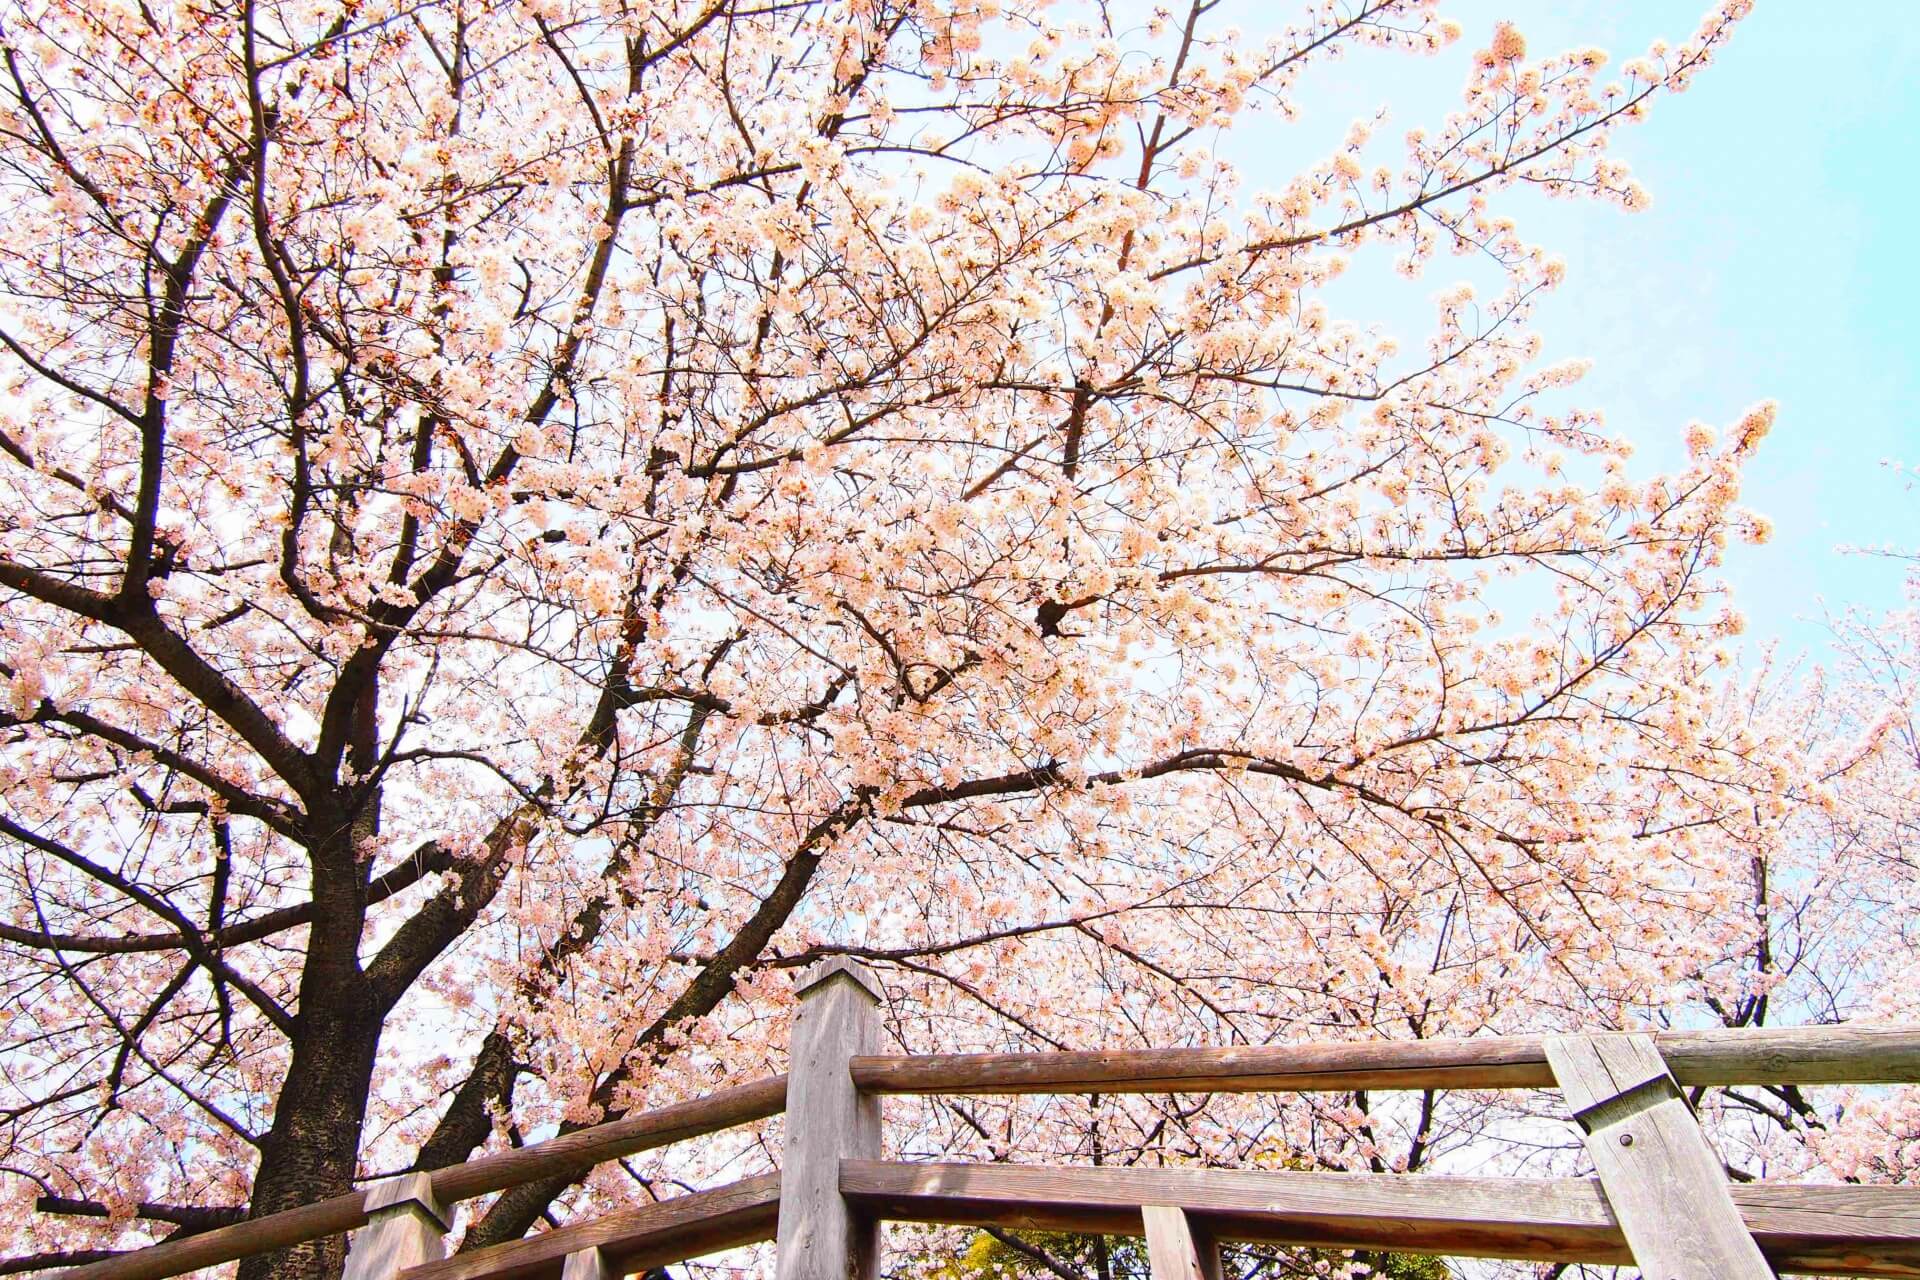 asukuyama-park-tokyo-blossoms